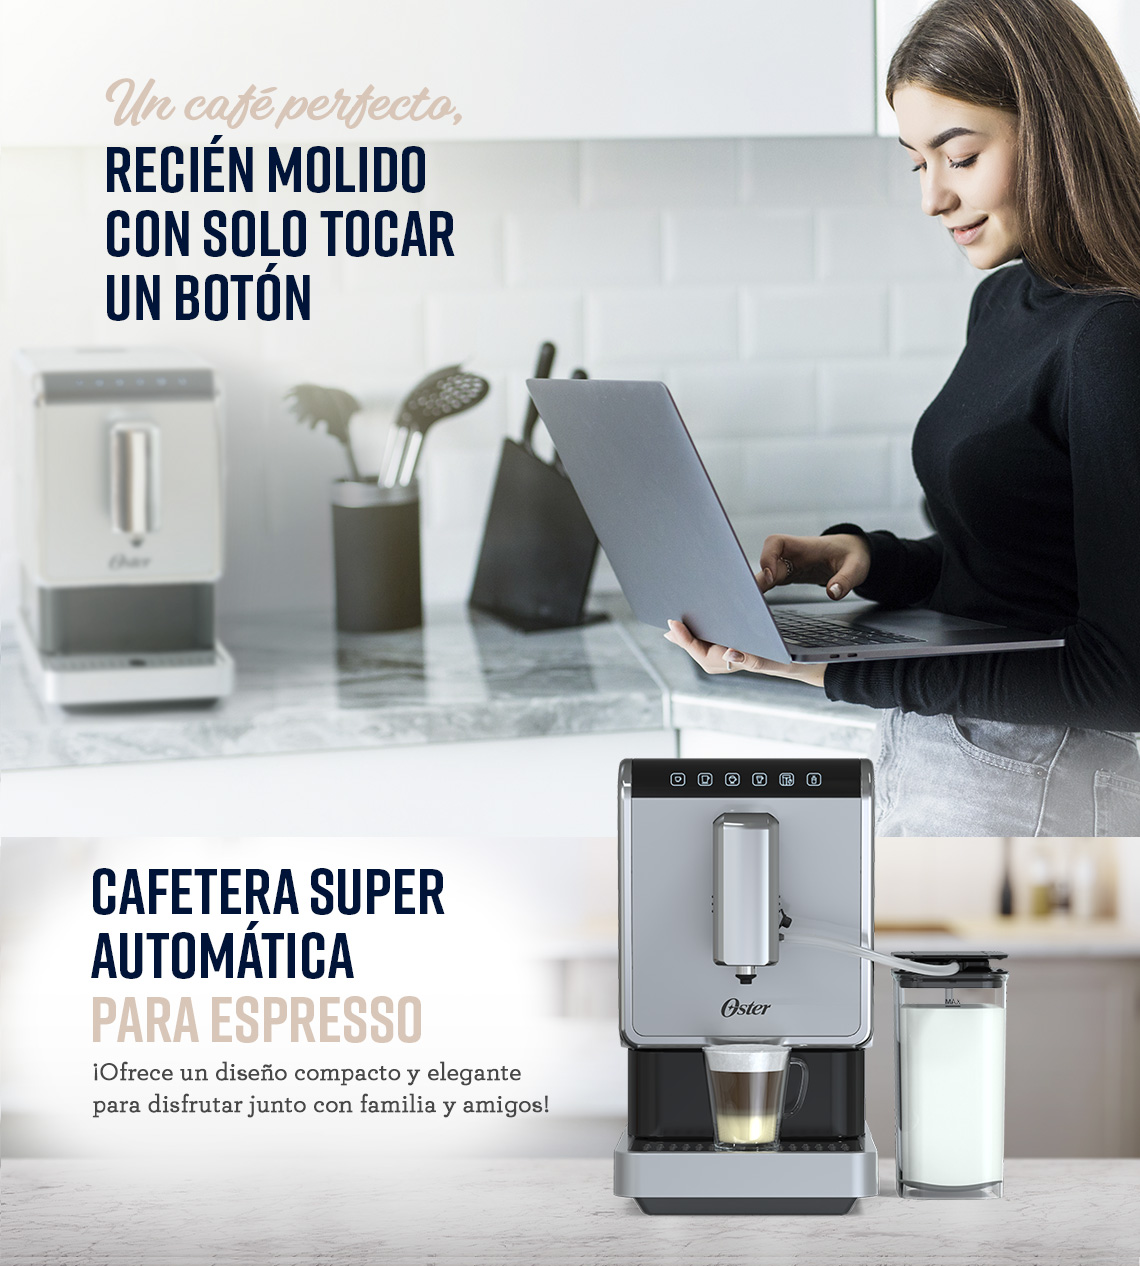 Cafetera OSTER super automática para espresso 2146375 Plat